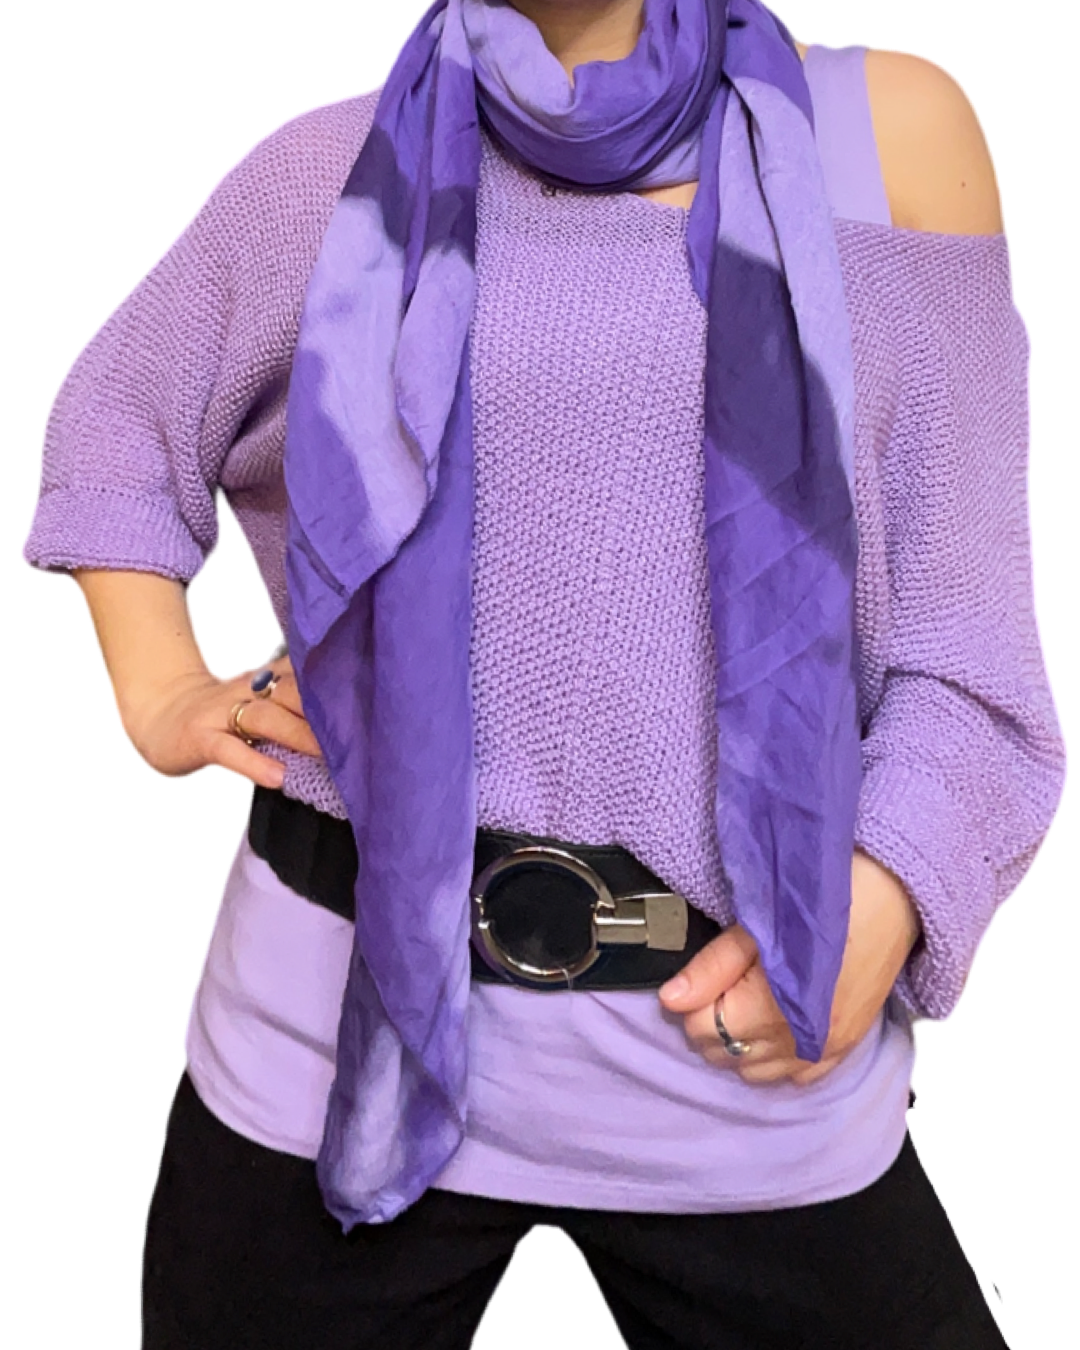 Chandail lilas pour femme à manche longue avec foulard mauve, blouse lilas à l'intérieur, et ceinture.